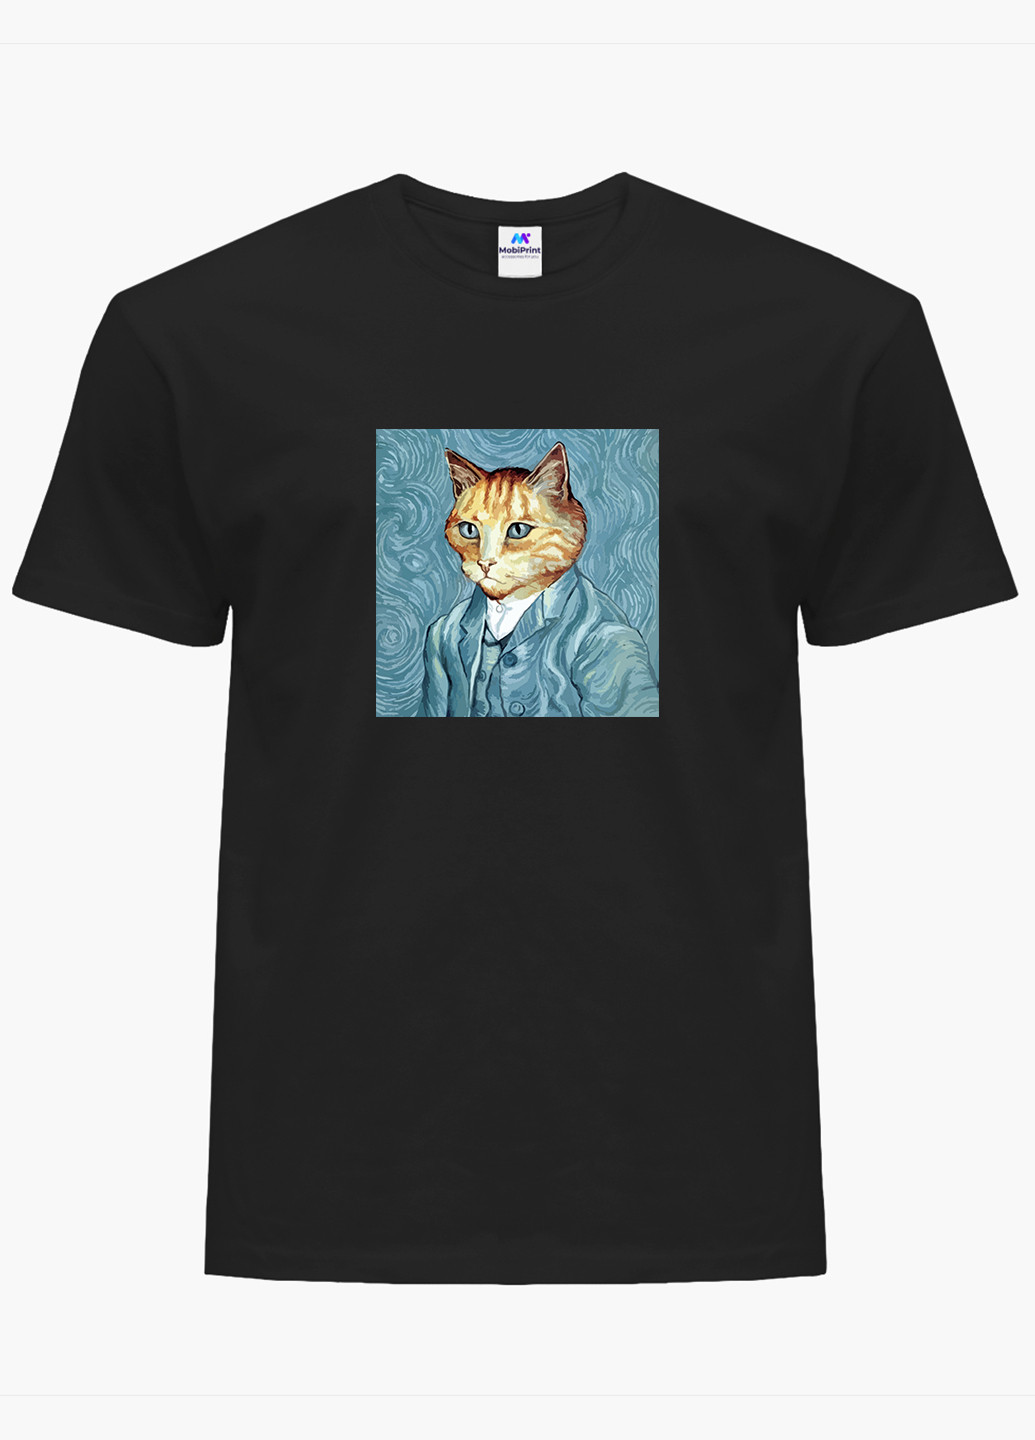 Чорна футболка чоловіча кот вінсент ван гог (vincent van gogh cat) (9223-2959-1) xxl MobiPrint